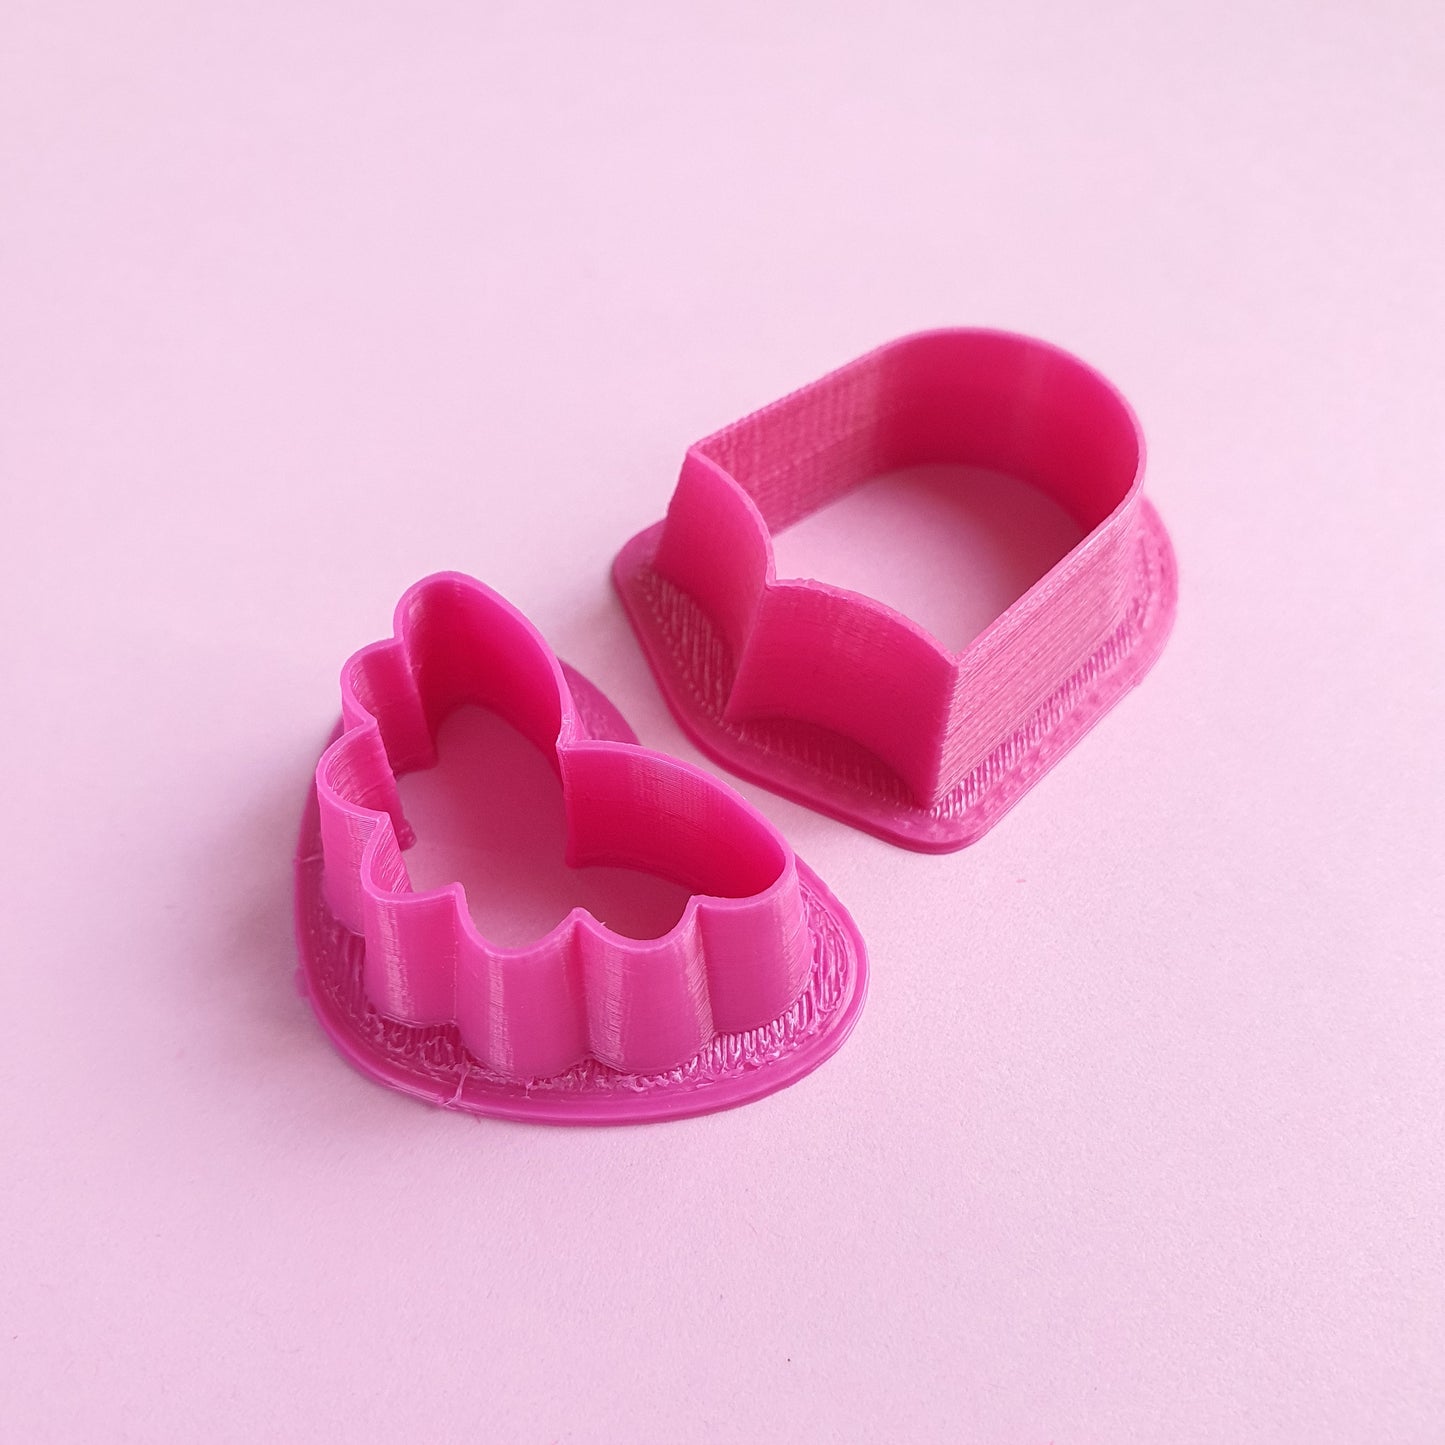 Earrings Polymer clay 3D cutters Geometry Jewelry shape cutter 2 pcs set - Luxy Kraft